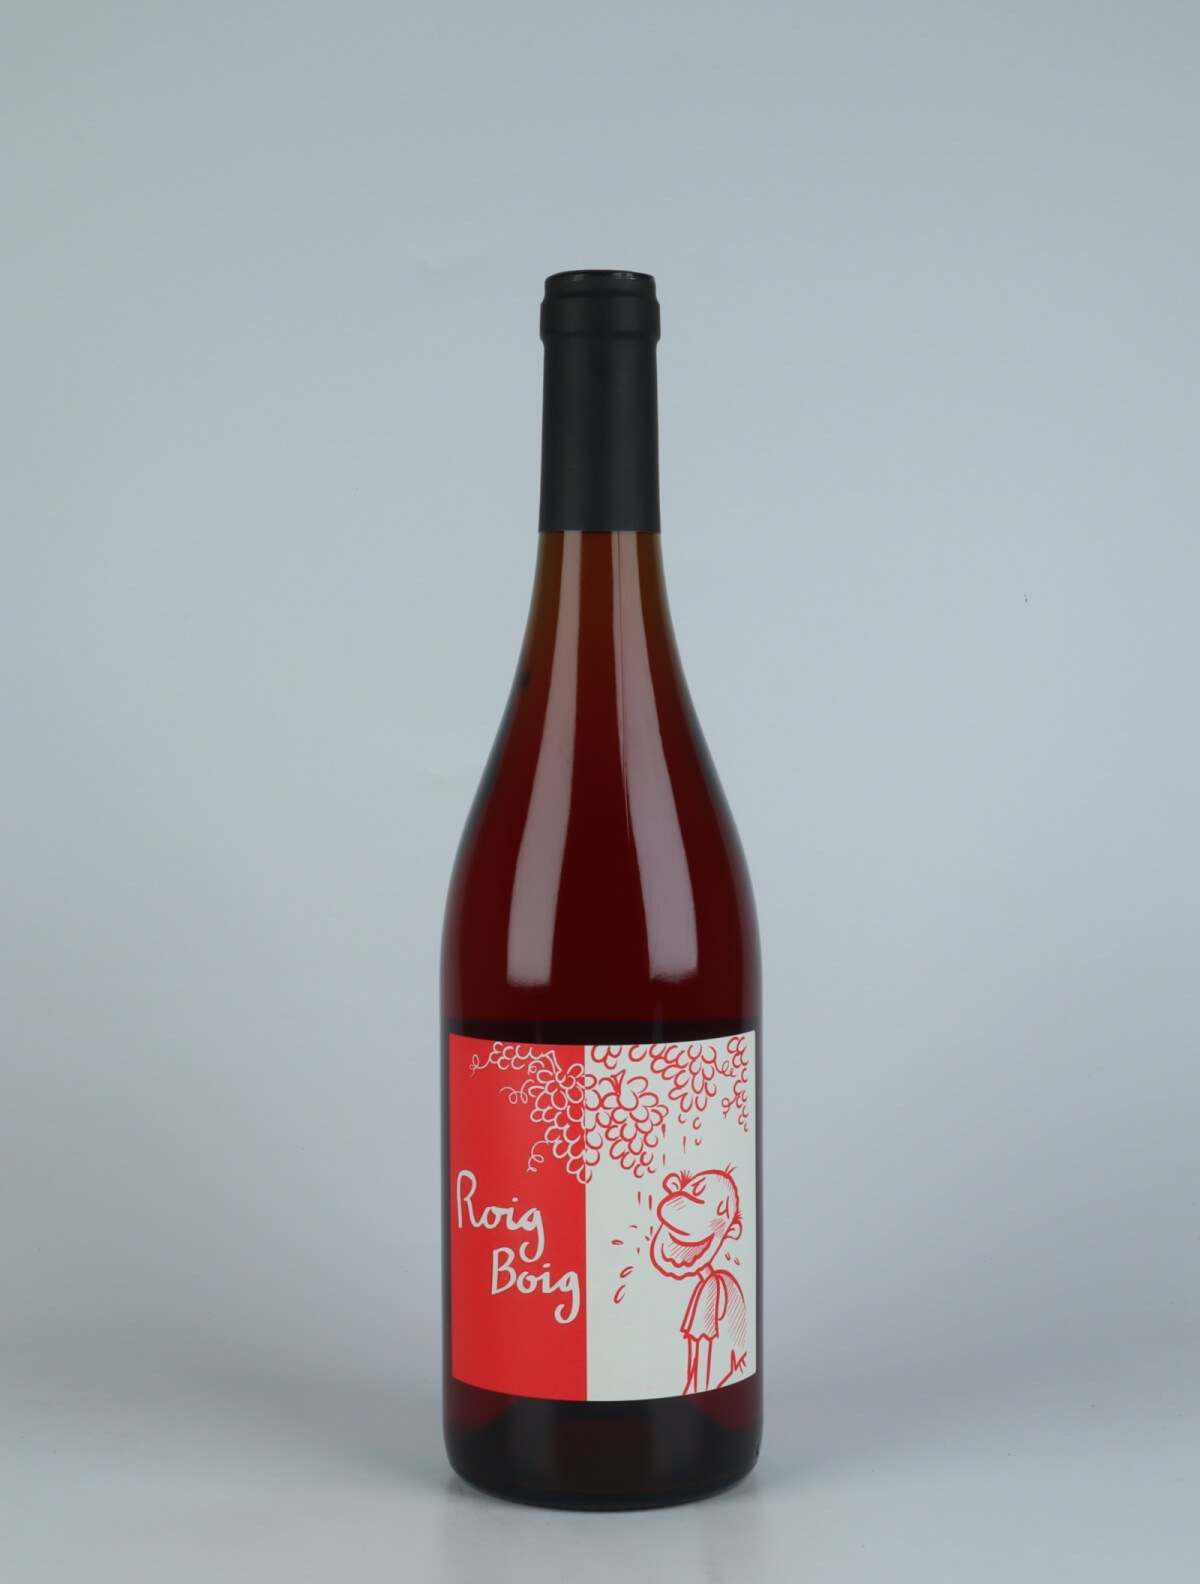 En flaske 2022 Roig Boig  - Tranquil Rosé fra Celler la Salada, Penedès i Spanien